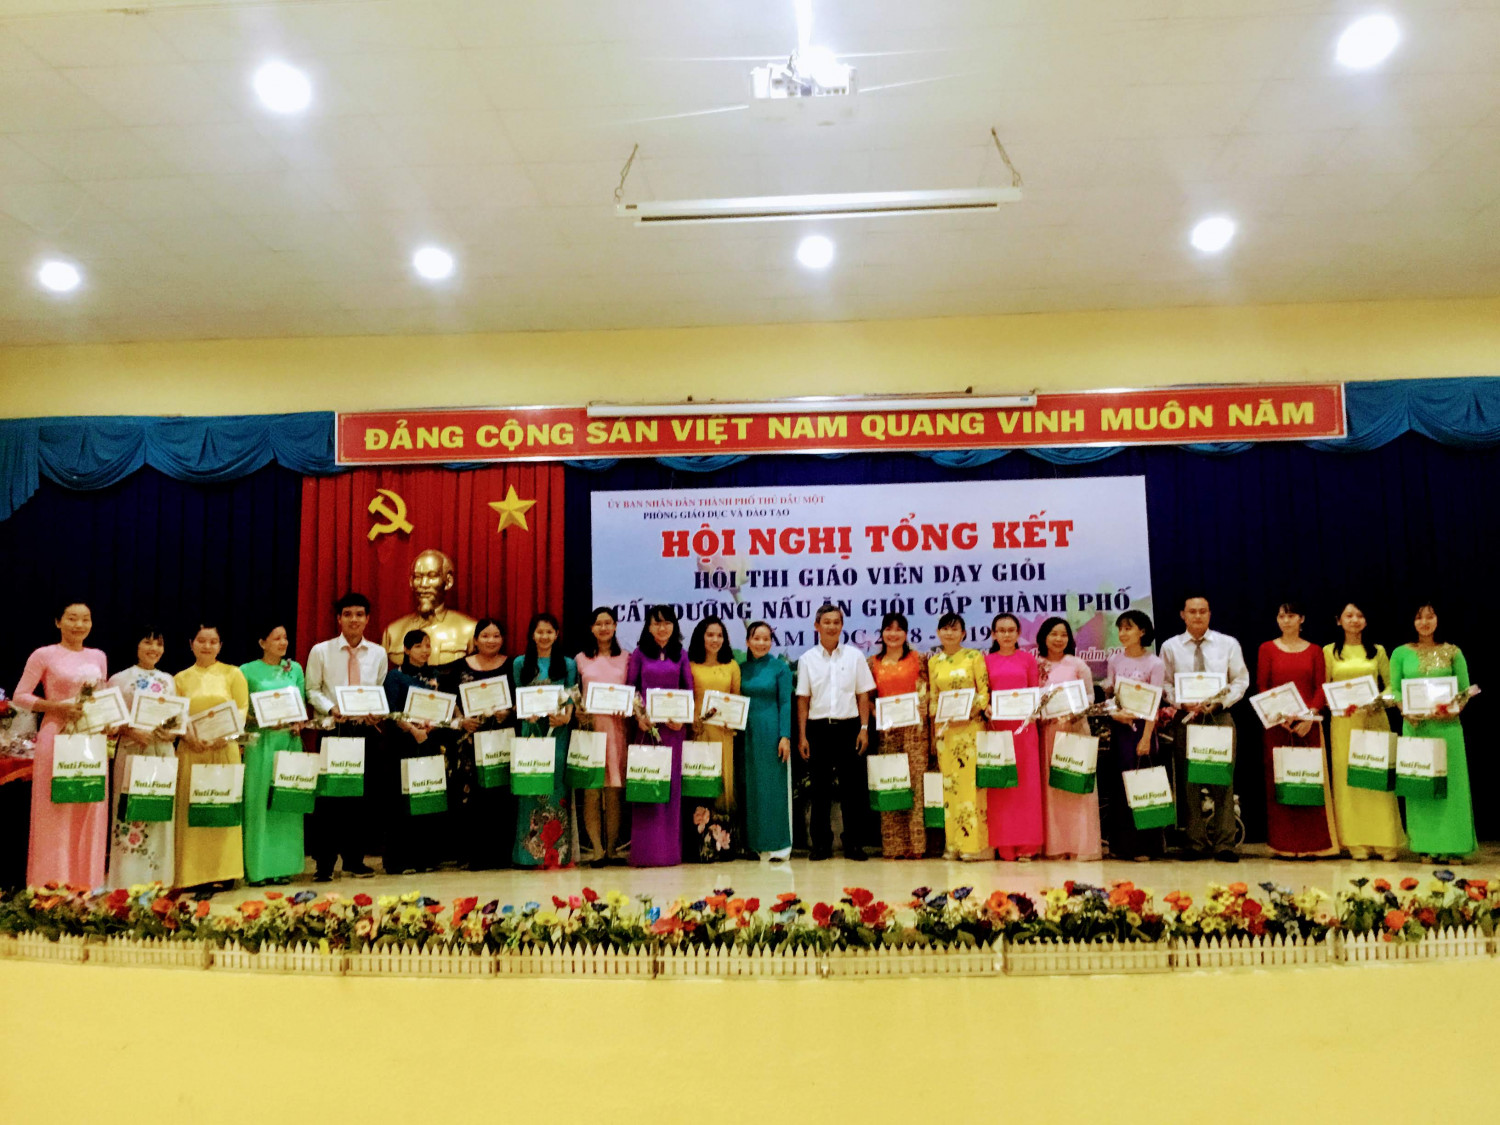 Thầy Nguyễn Văn Chệt (giữa) - trao giấy chứng nhận cho GV đạt GVG cấp Thành phố